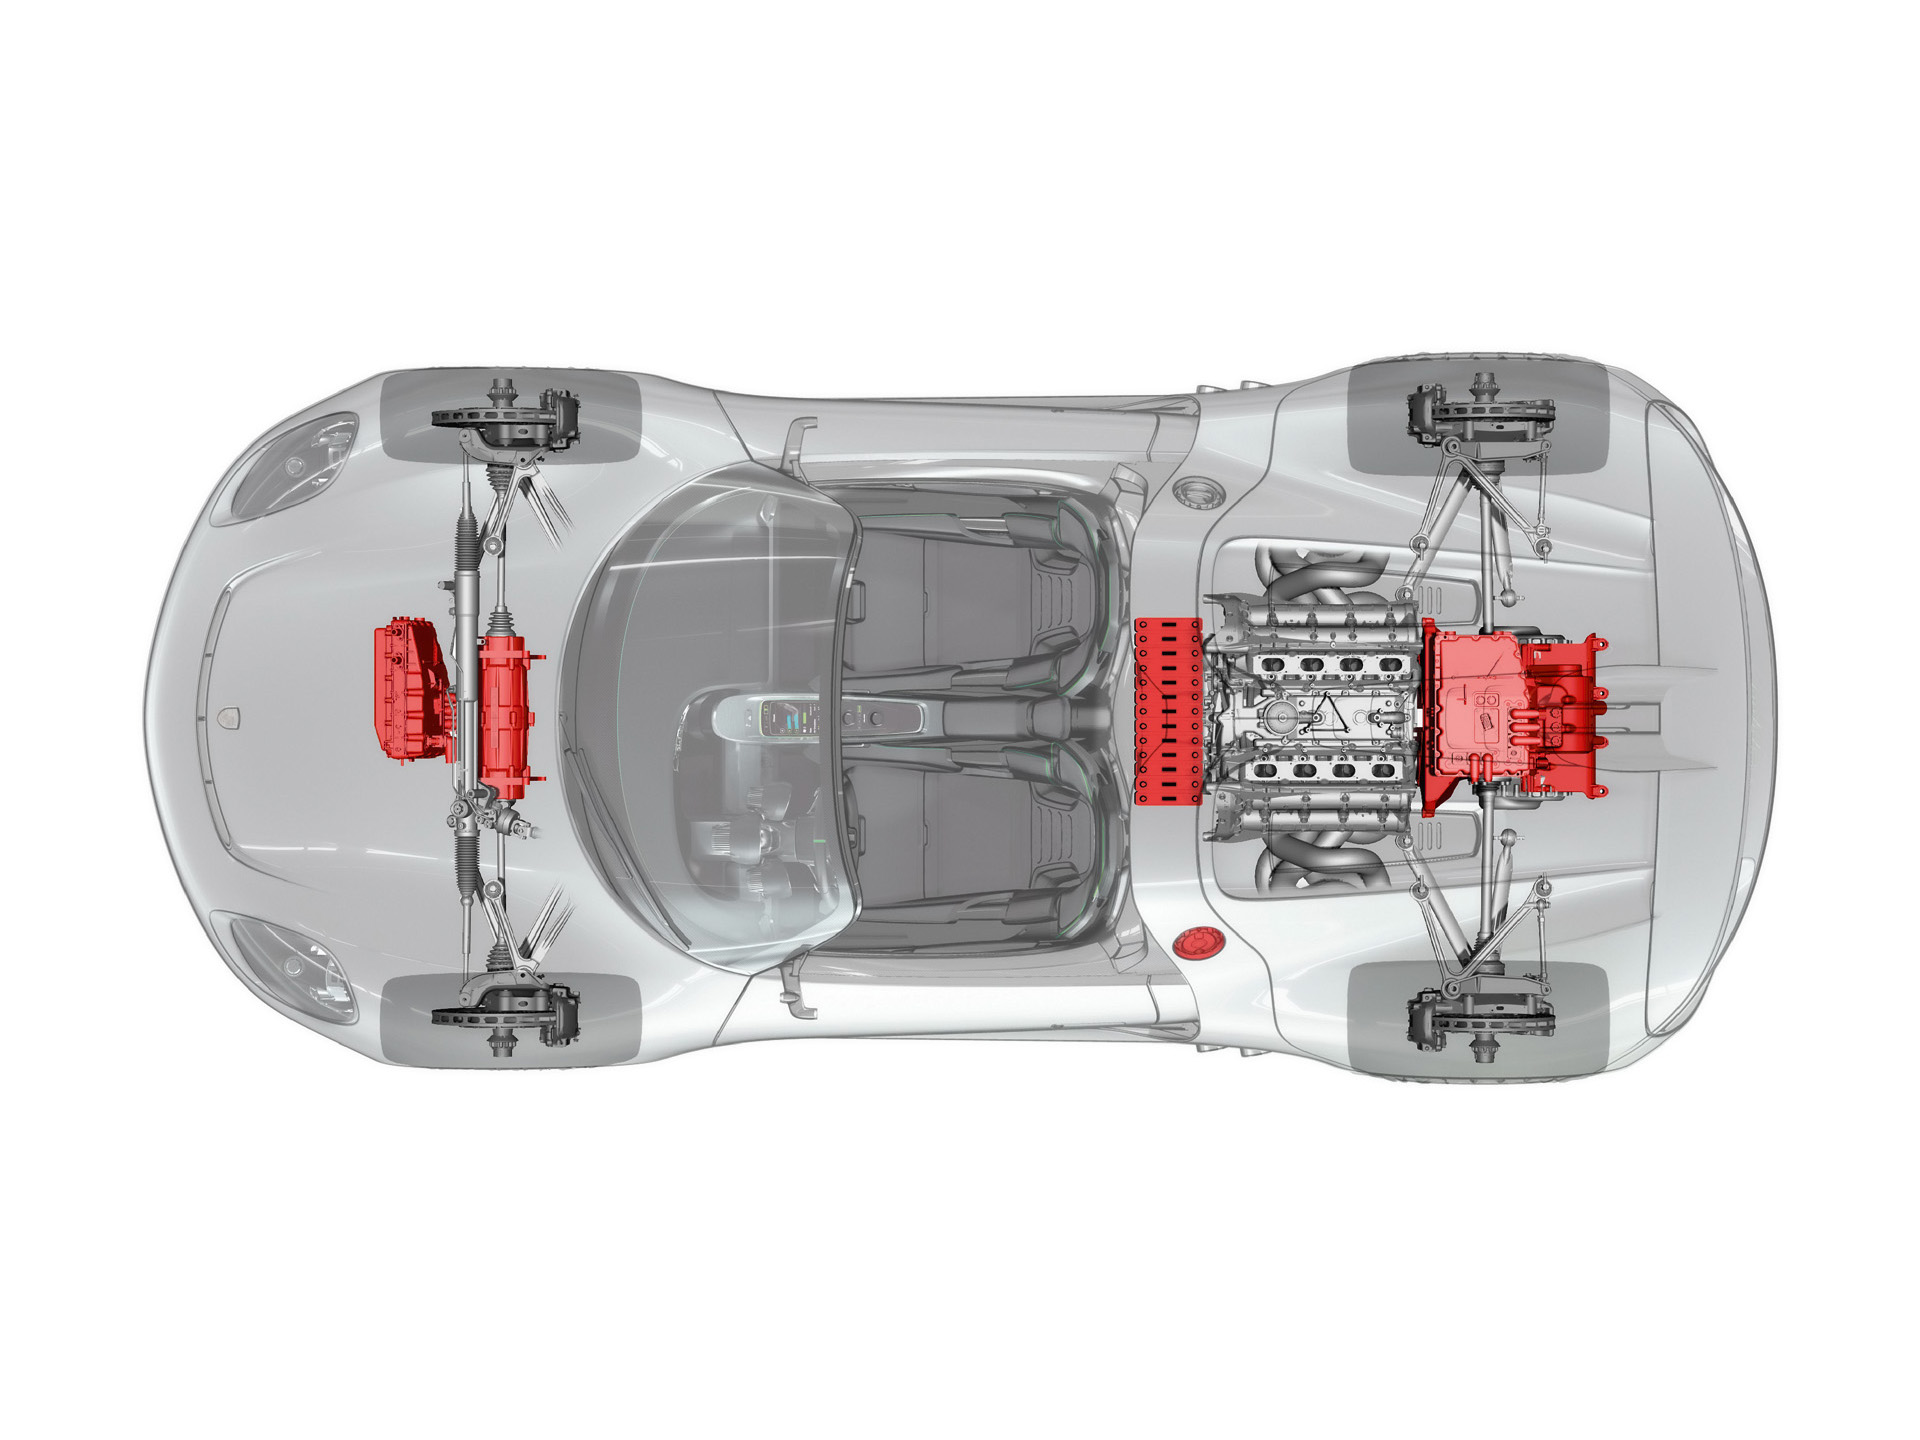 
Image Mcanique - Porsche 918 Spyder Concept (2010)
 